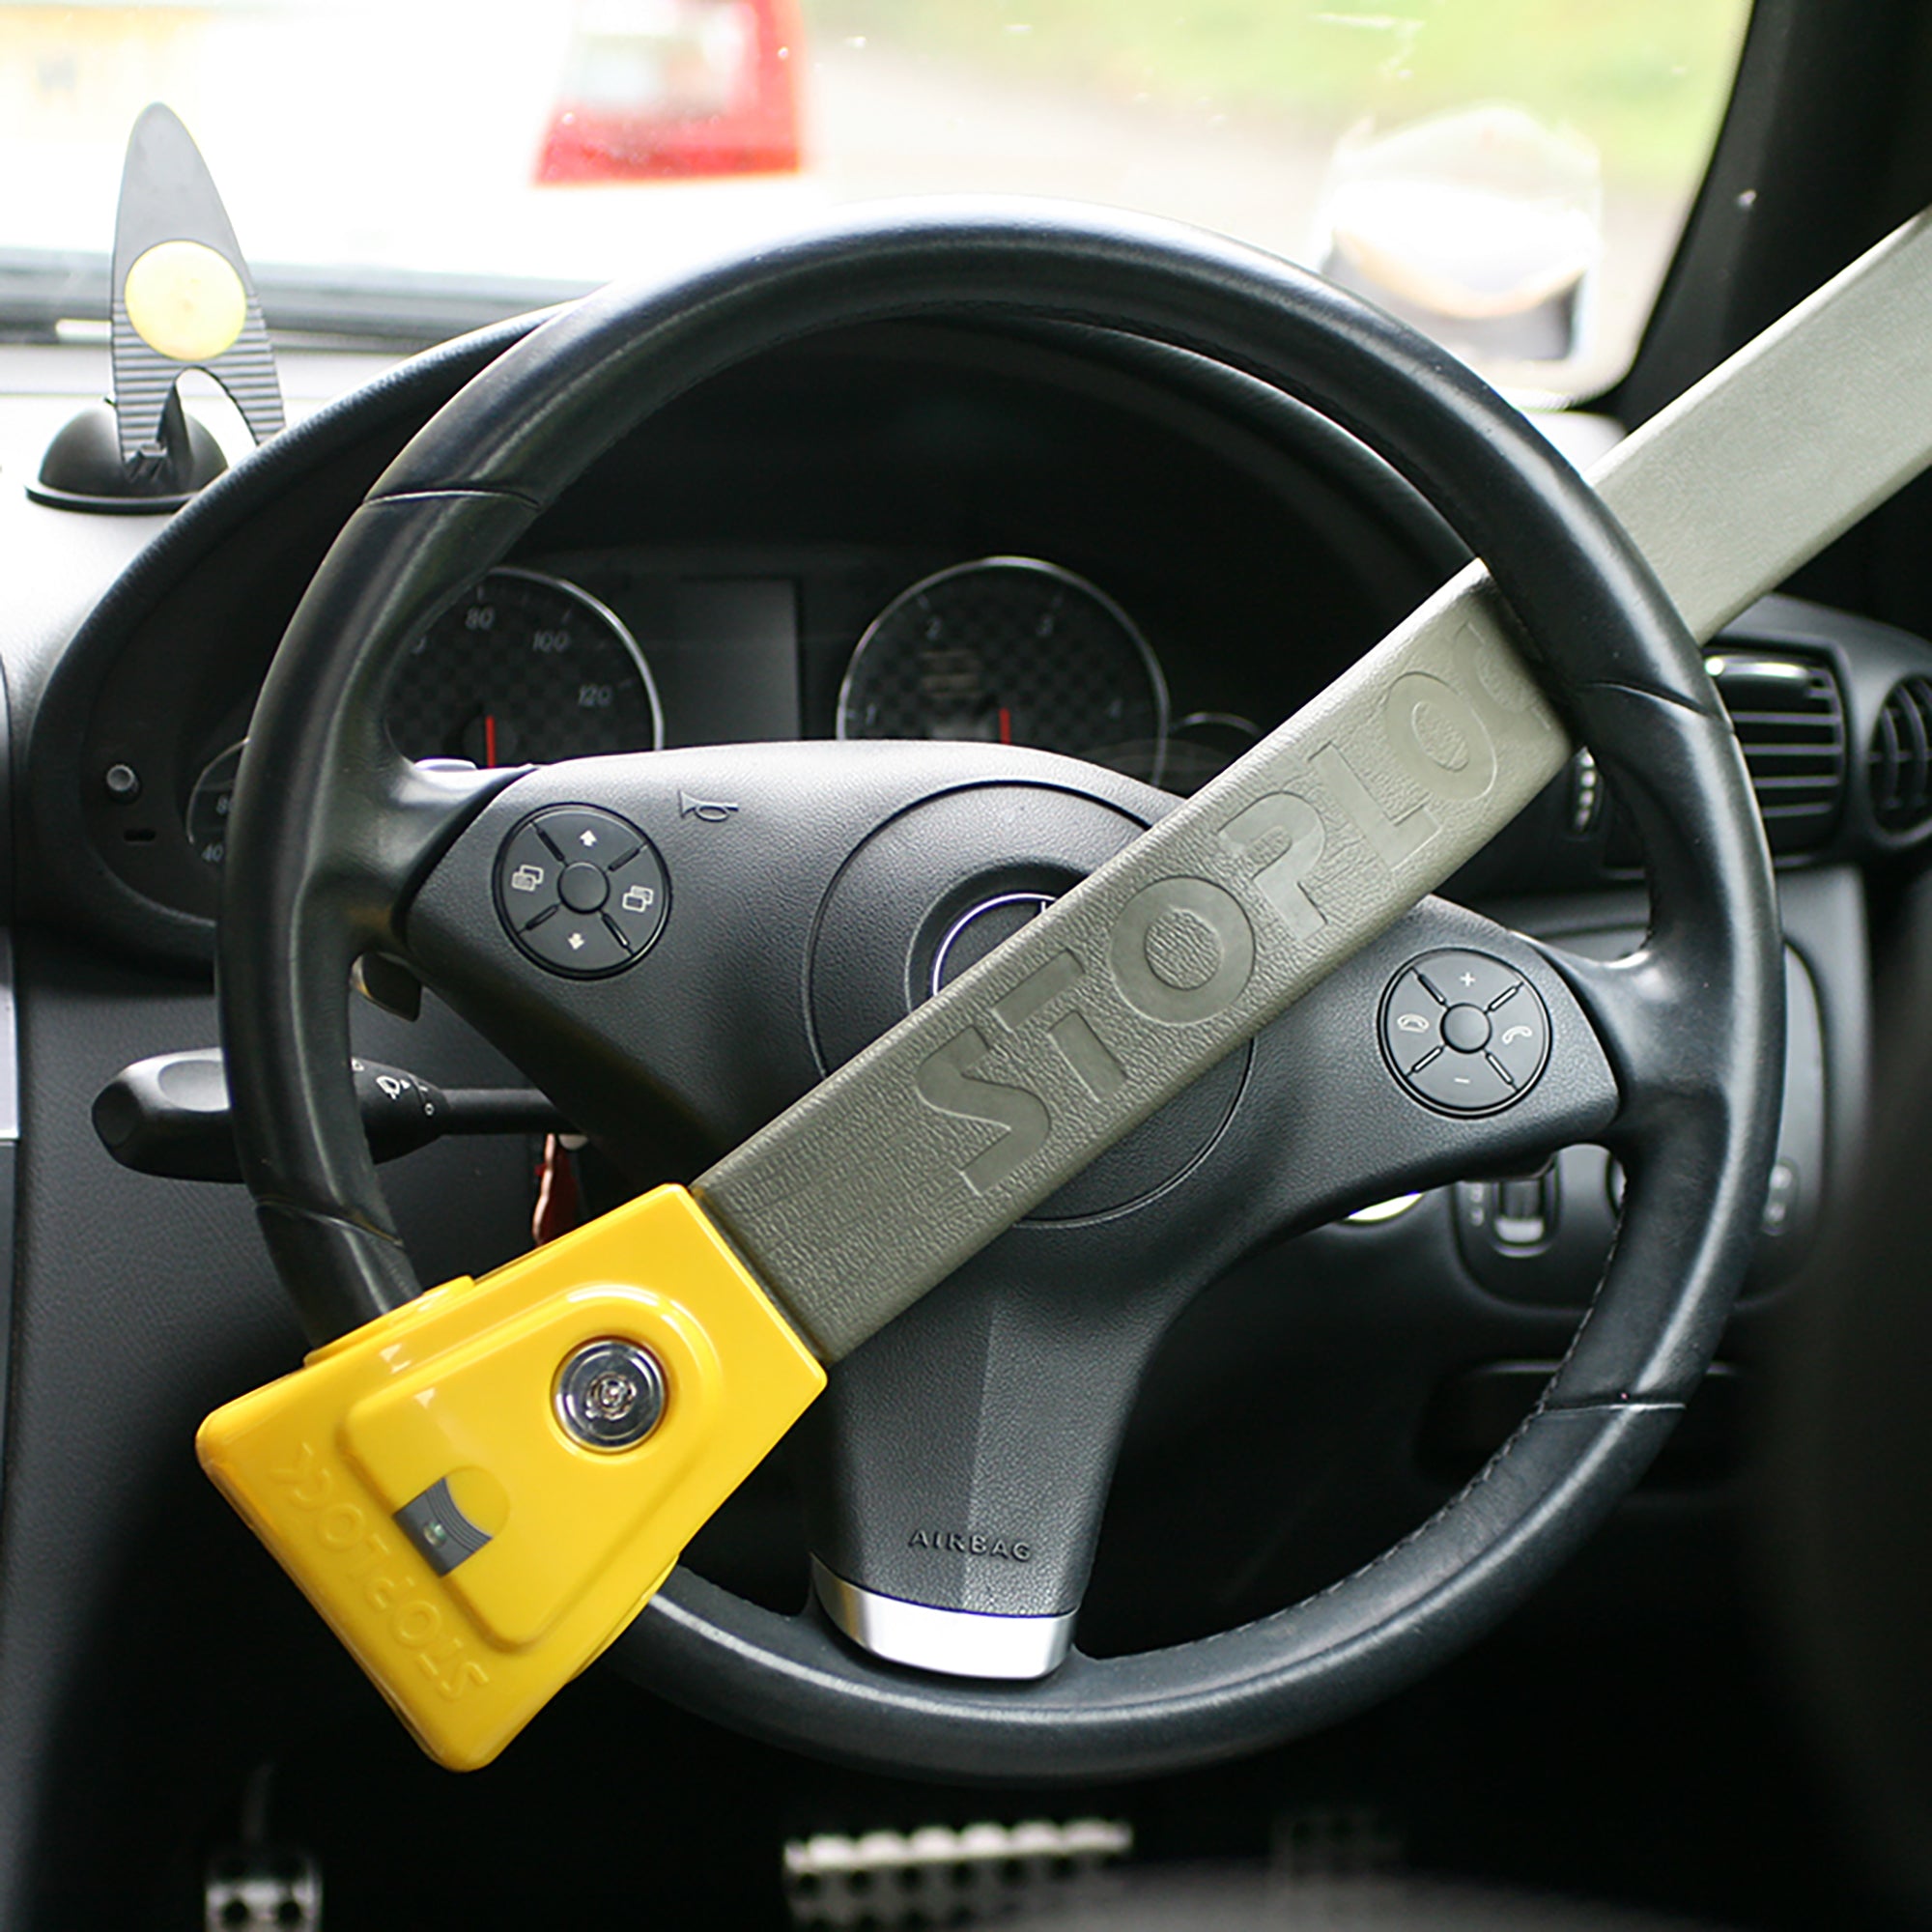 Stoplock Original Steering Wheel Lock